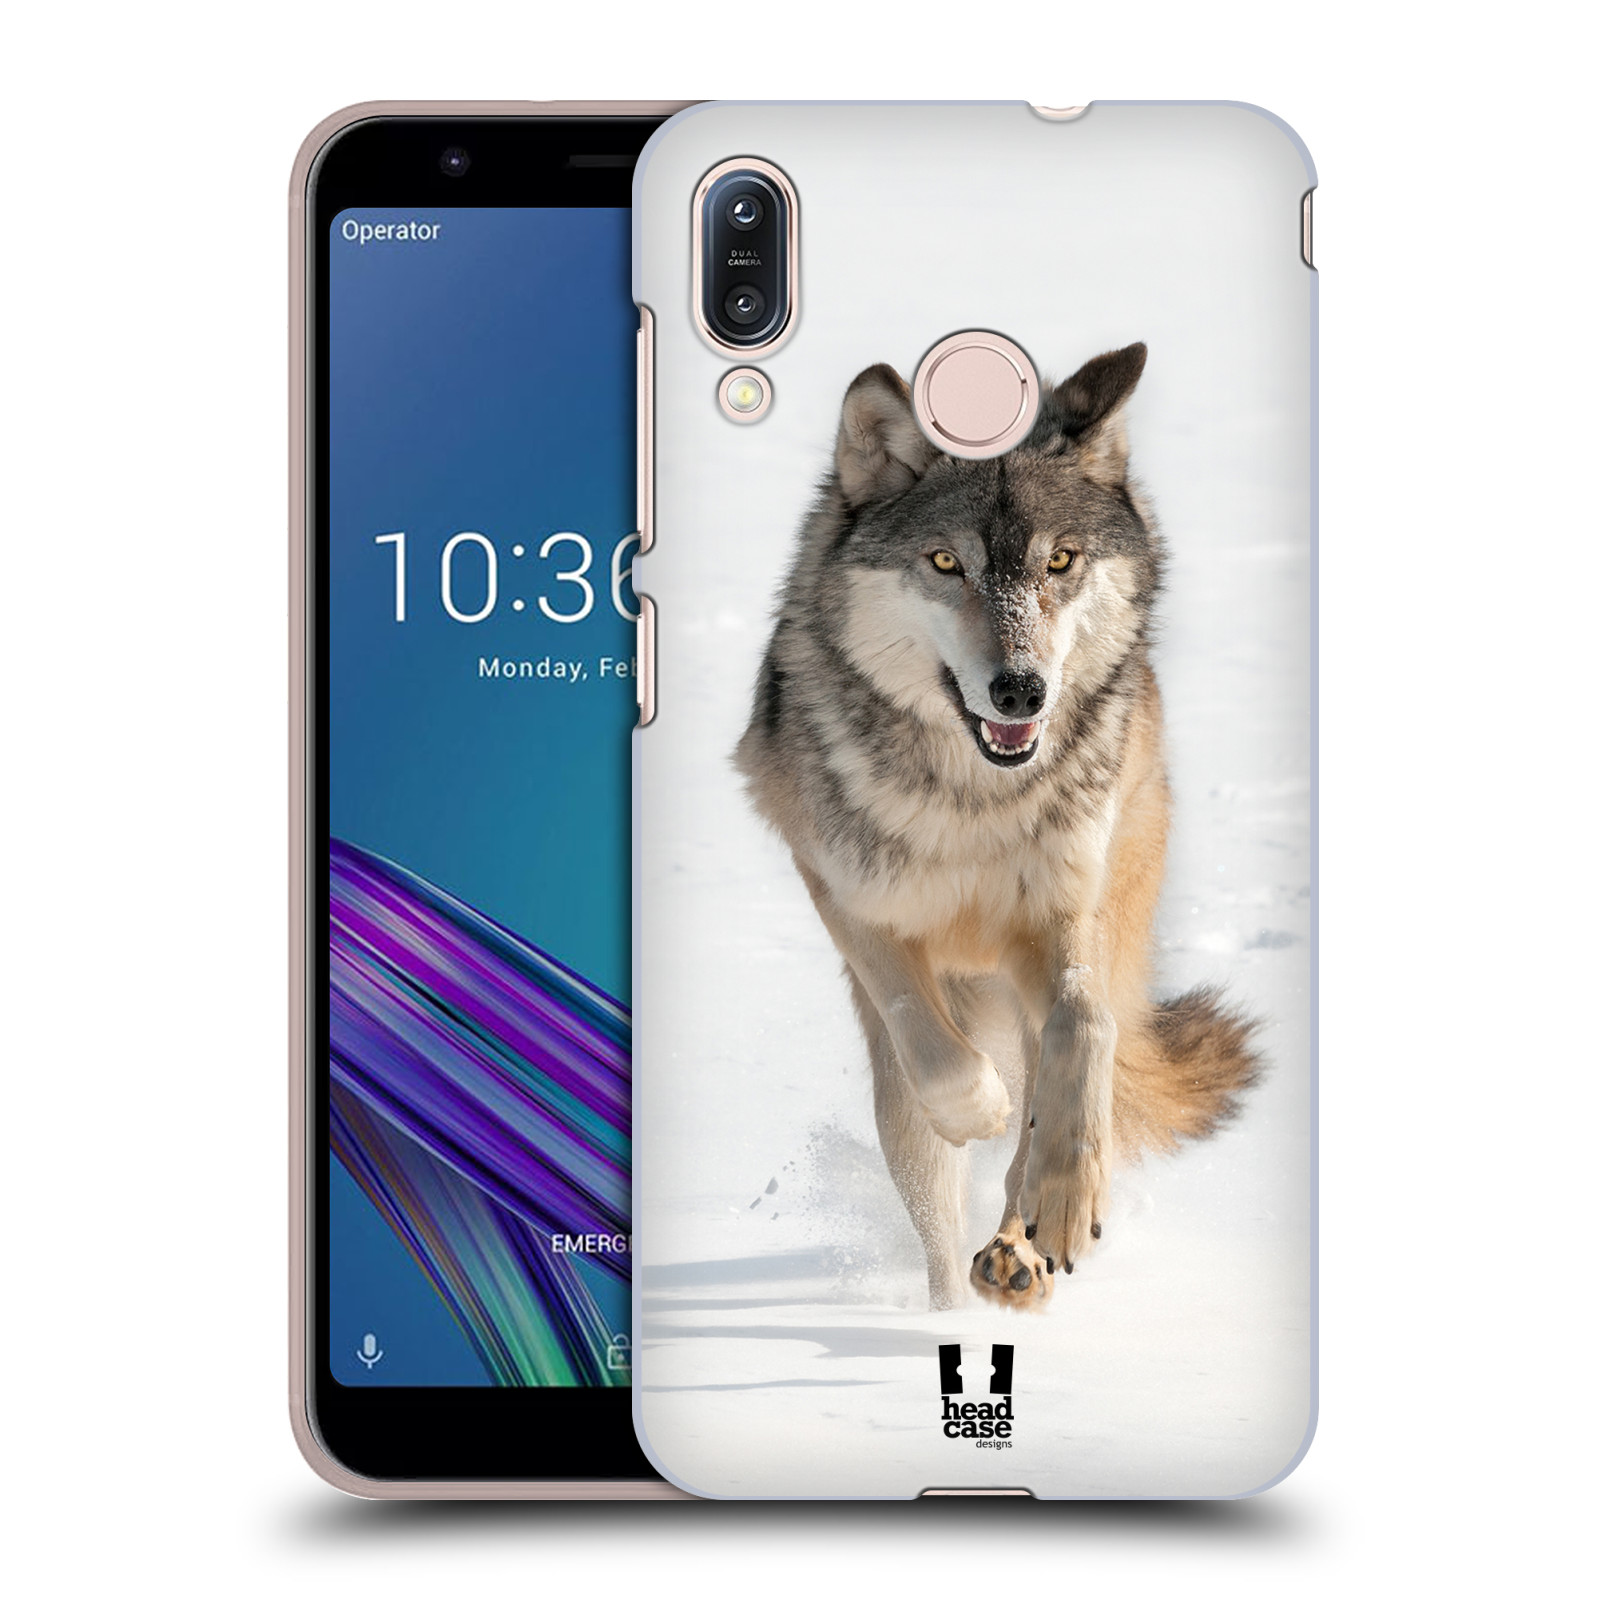 Zadní obal pro mobil Asus Zenfone Max (M1) ZB555KL - HEAD CASE - Svět zvířat divoký vlk